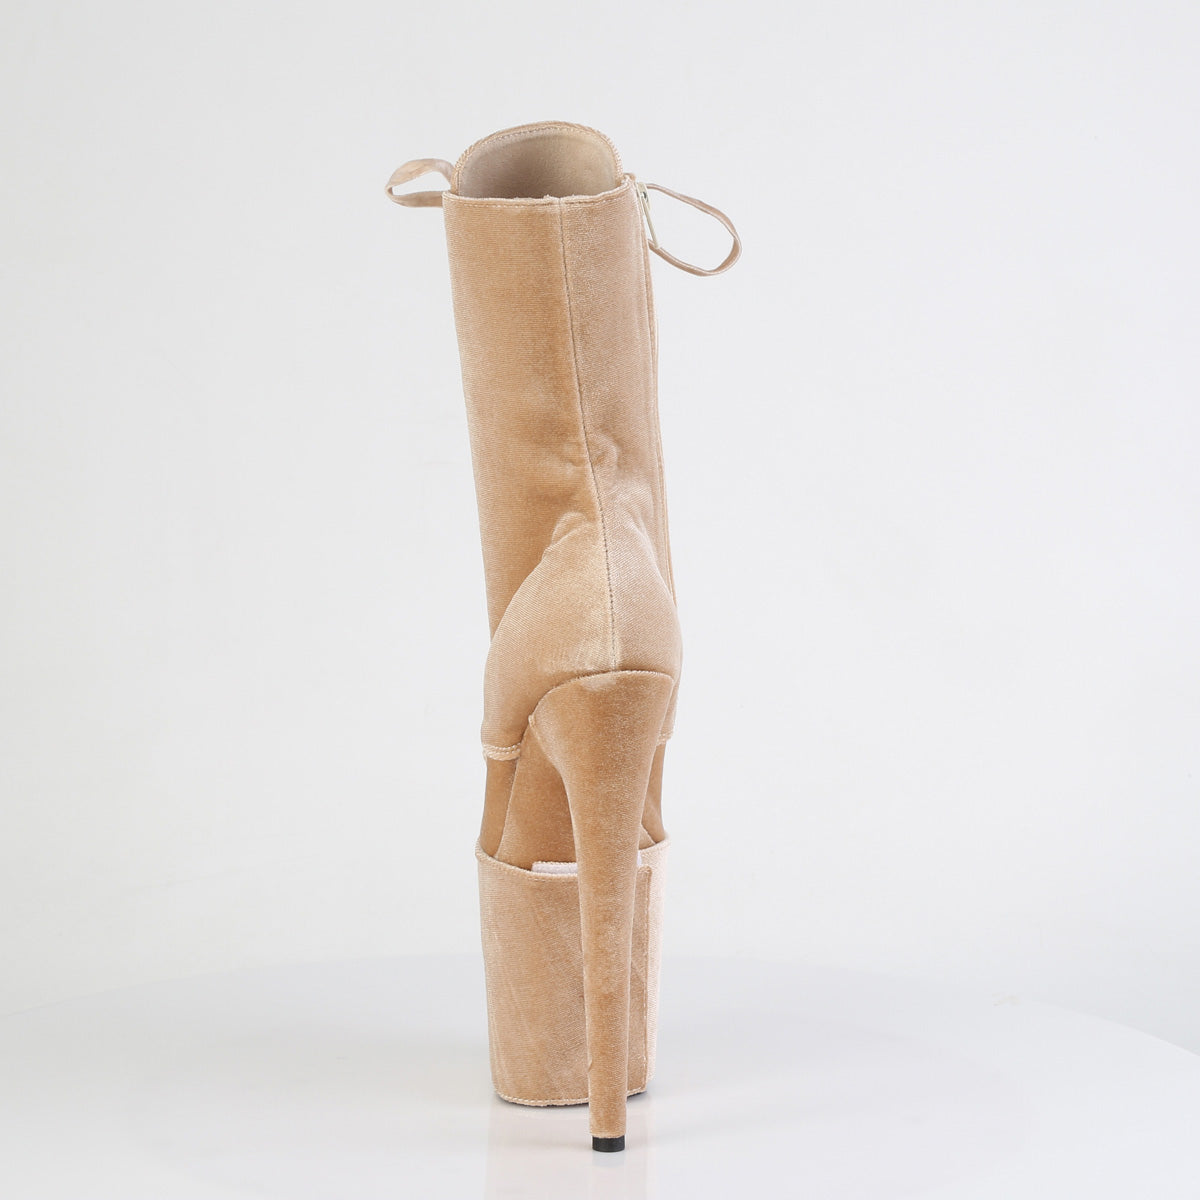 FLAMINGO-1045VEL Cream Velvet Pleaser Pole Dancing Ankle Boots